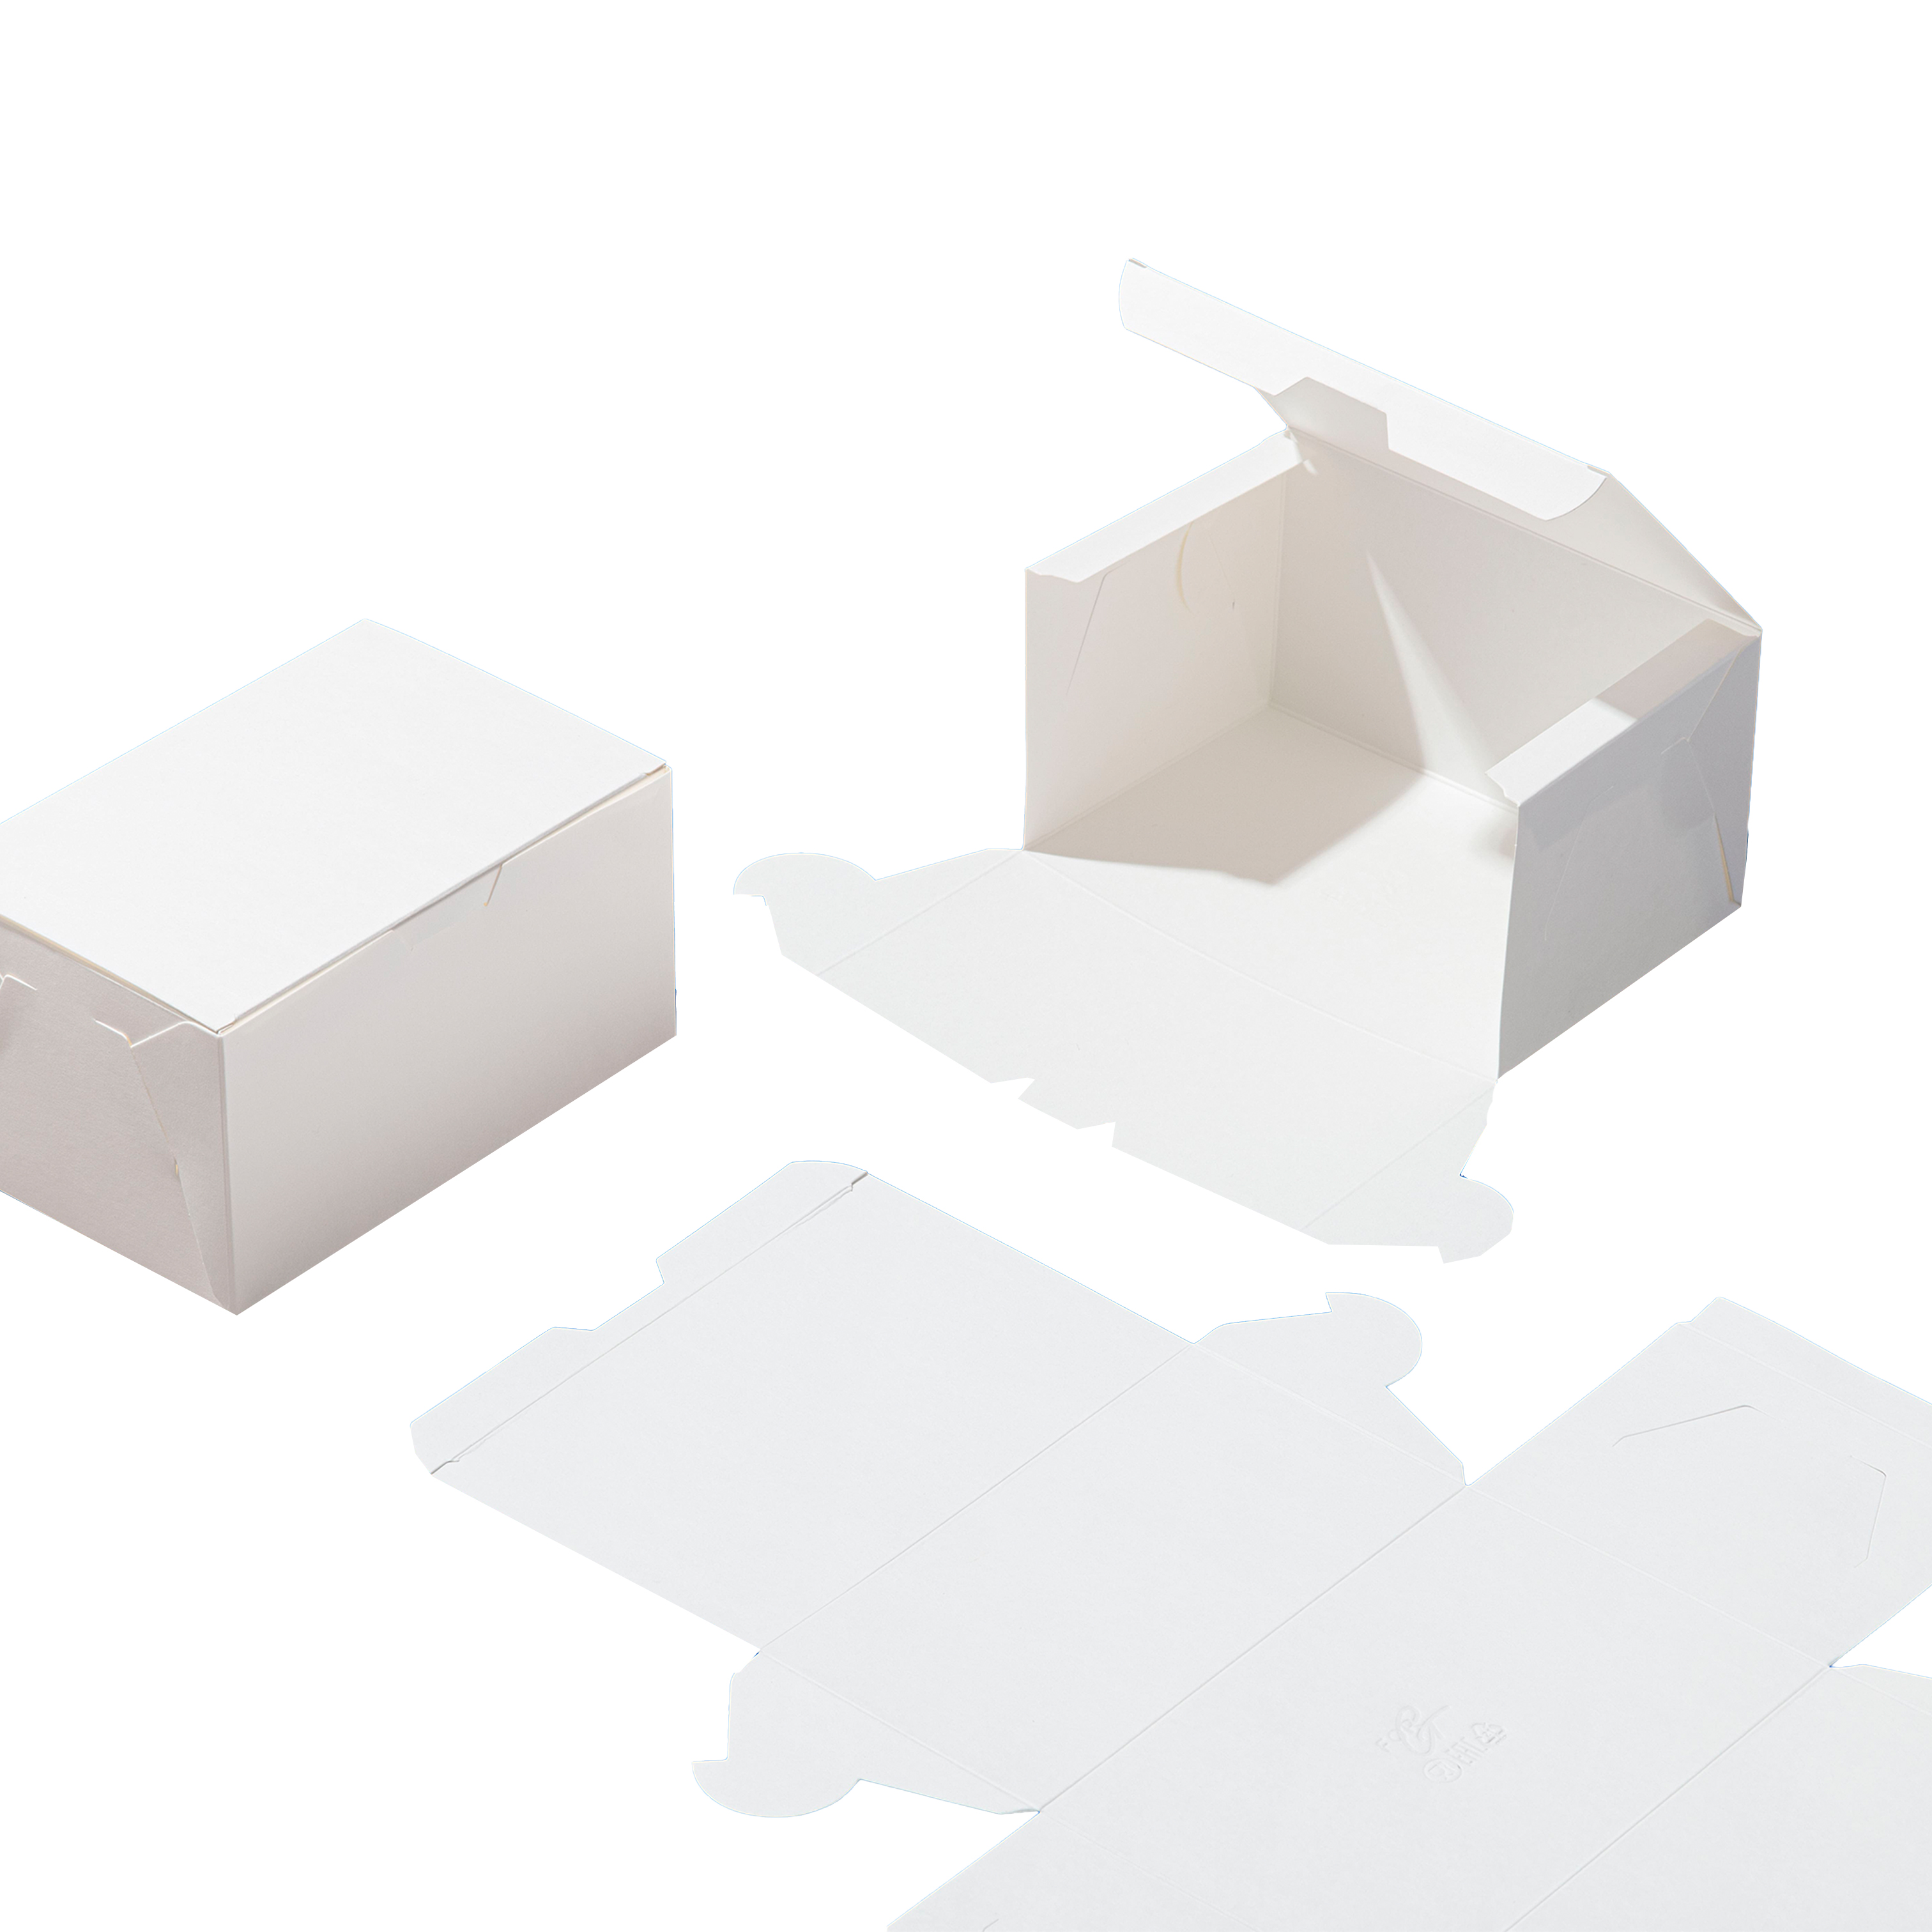 Коробка картонная для кондит. изд. 240*150*60мм белый ForGenika SIMPLE (25/250)